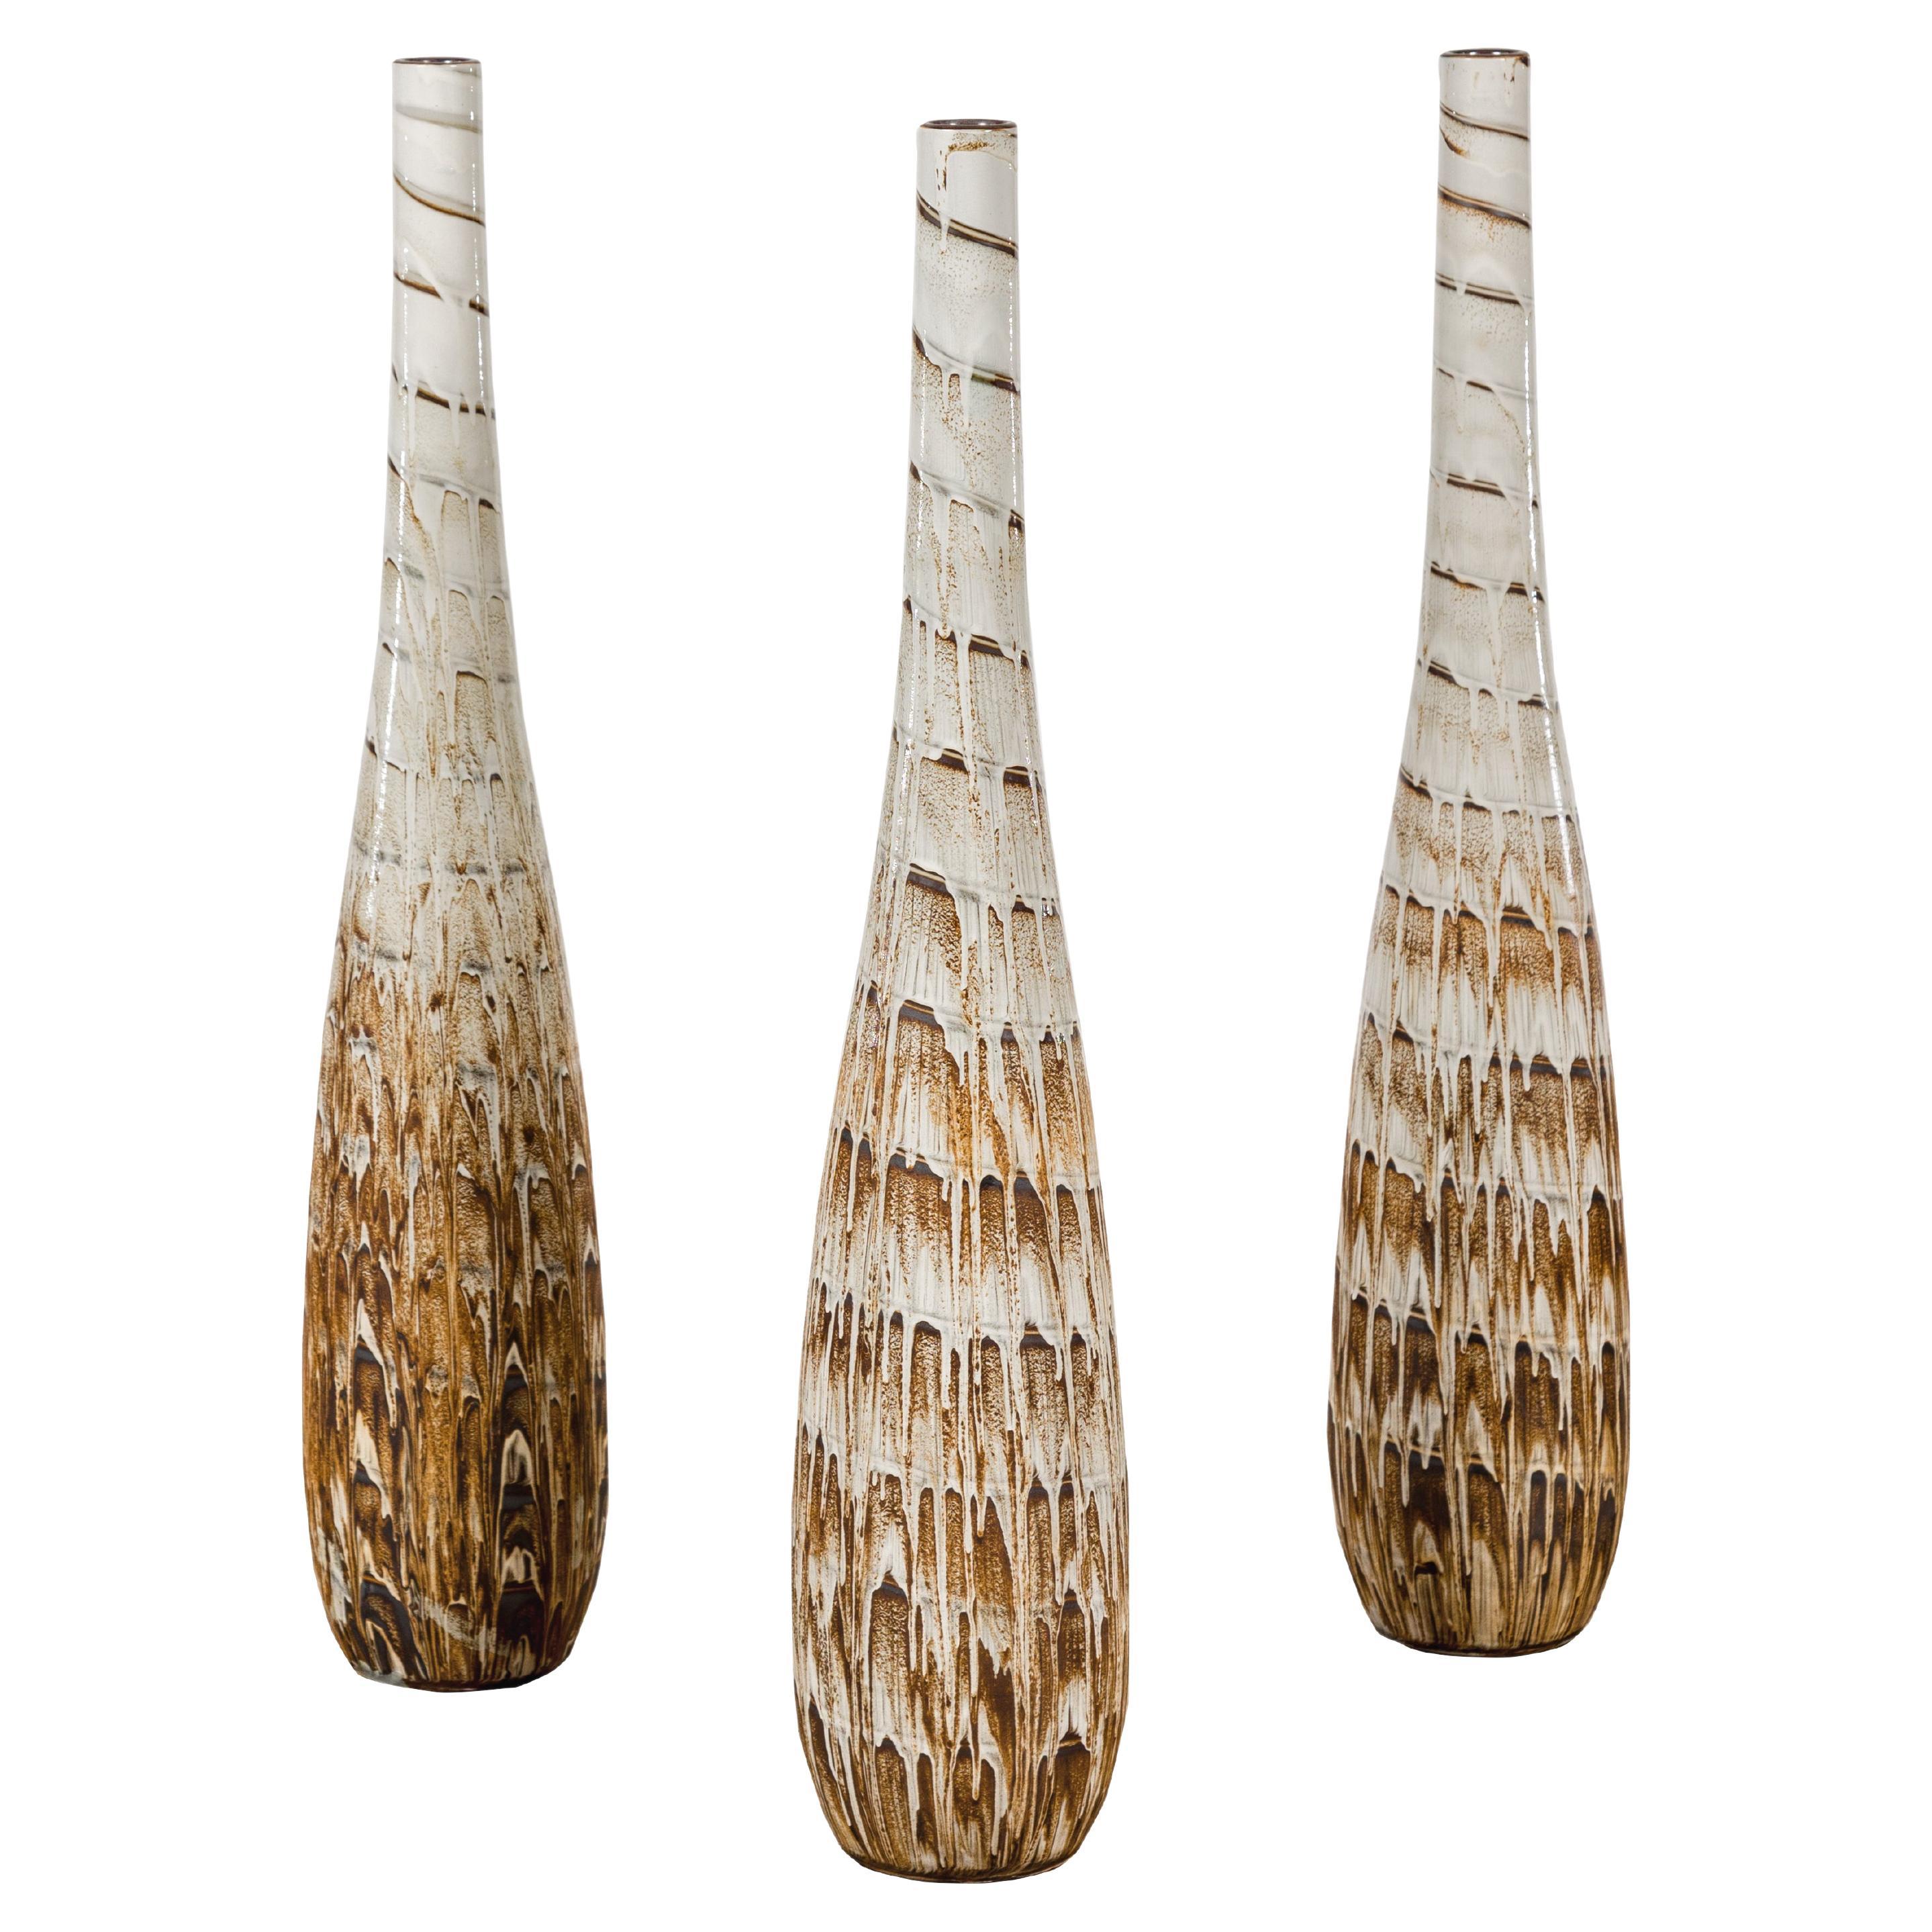 Vases élancés en céramique avec motifs en spirale et glaçure en goutte d'eau brune, vendus à l'unité